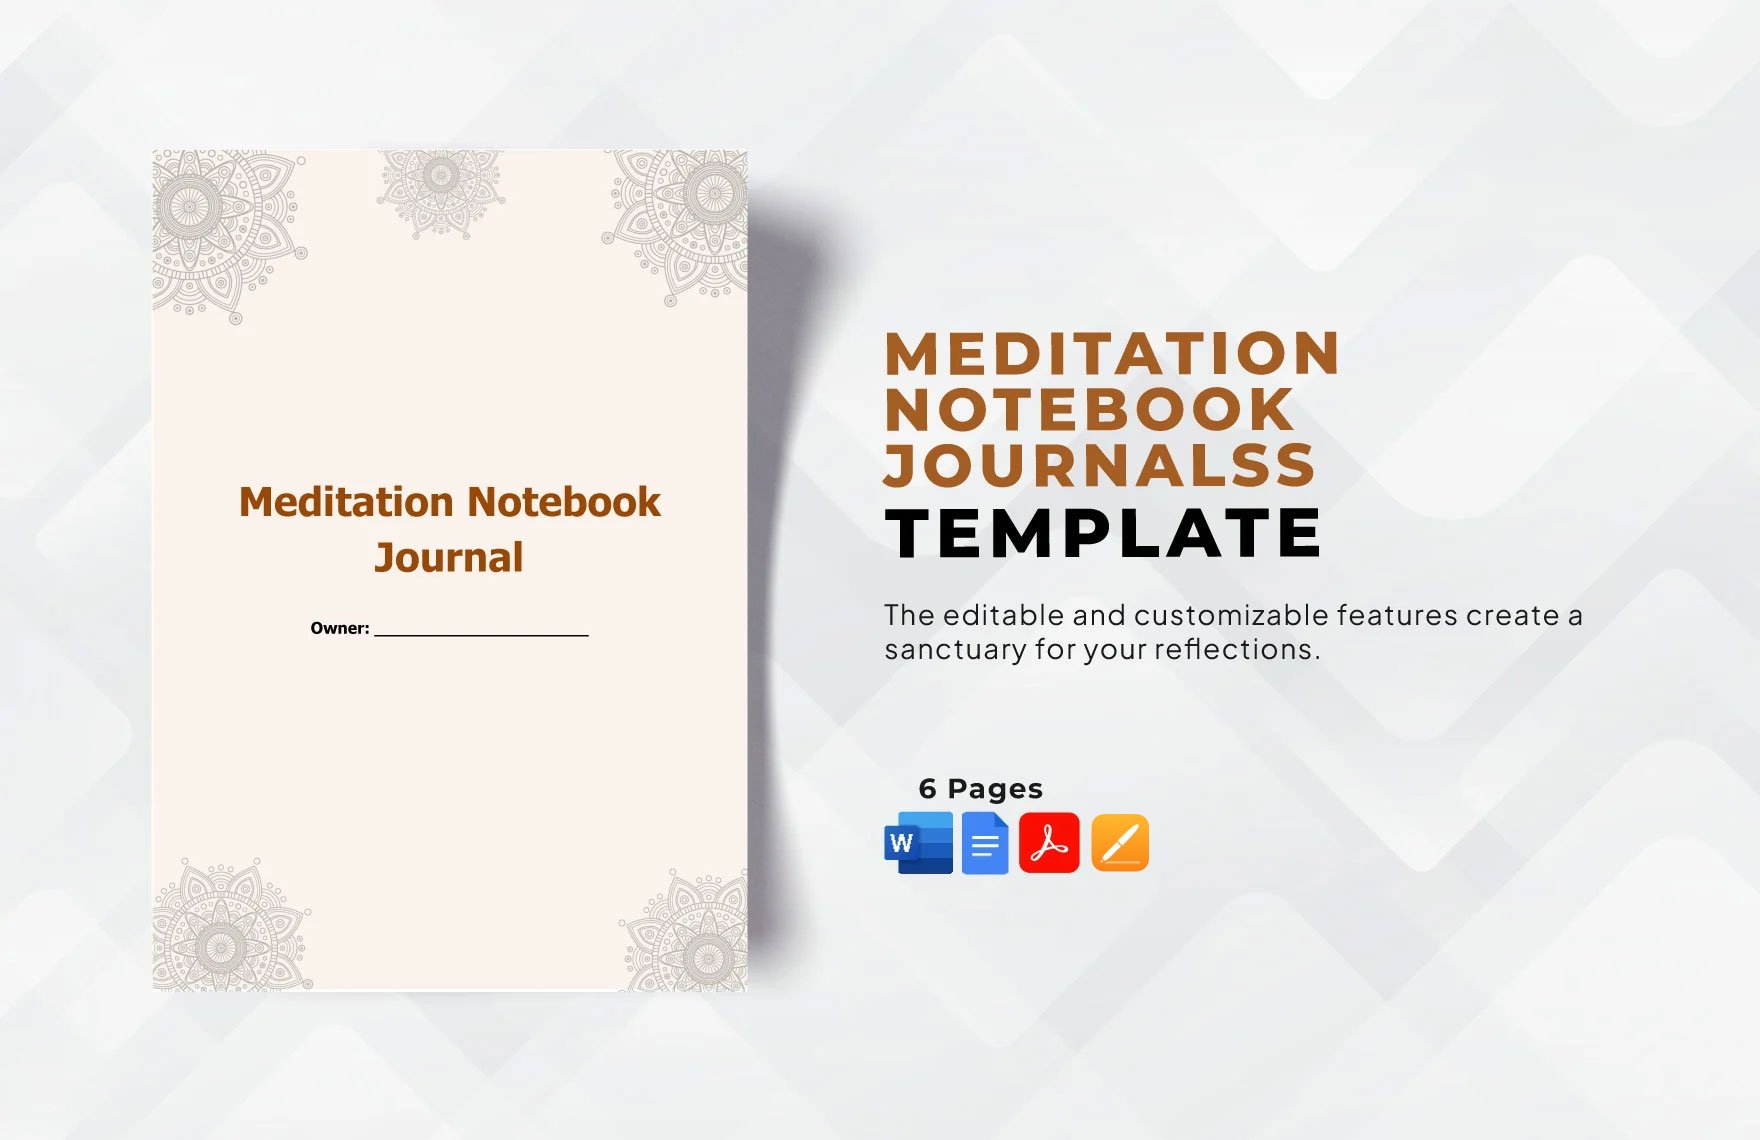 Meditation Notebook Journals Template